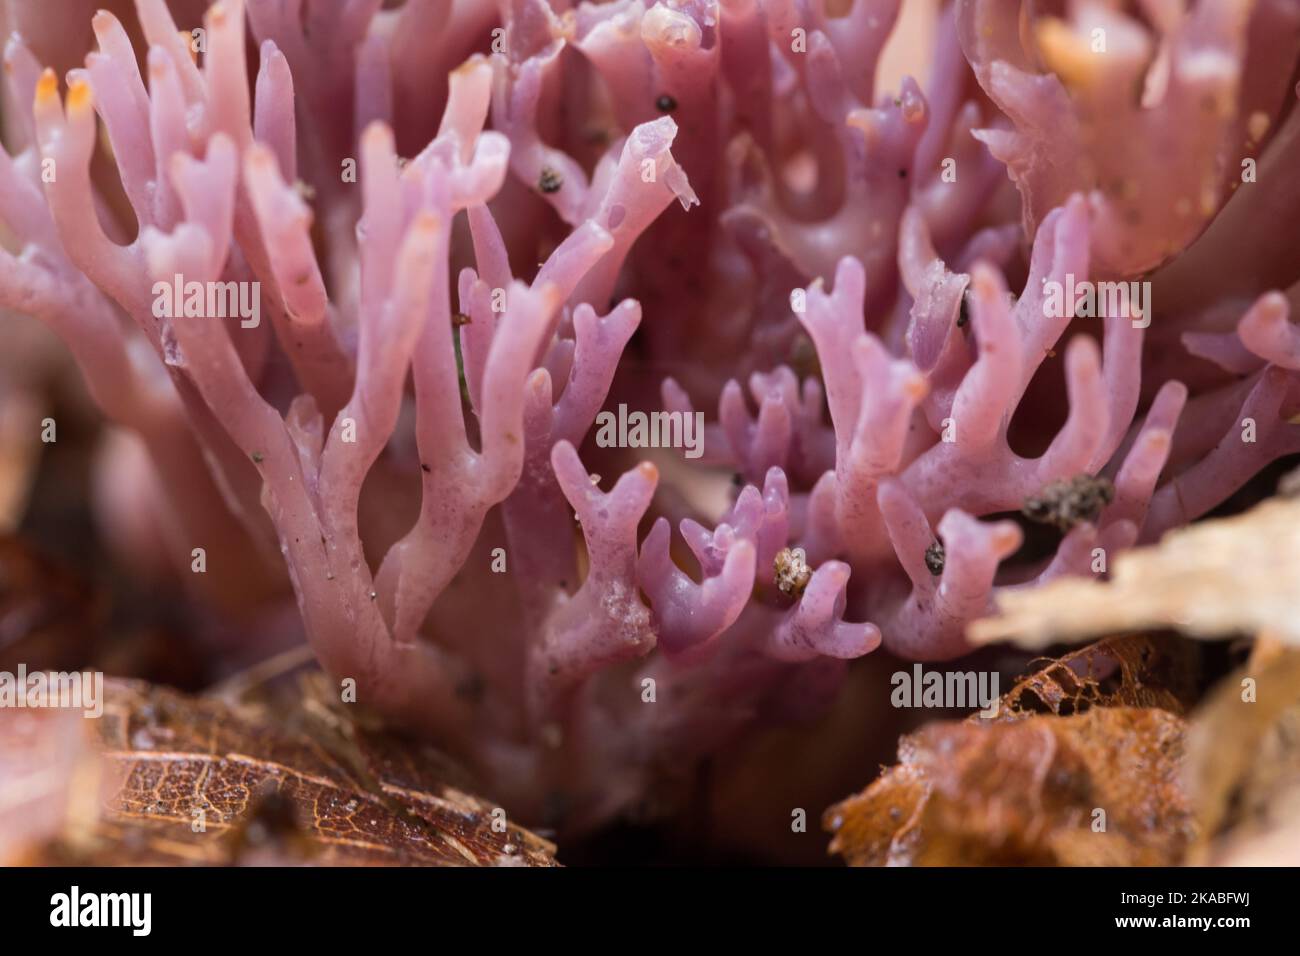 Champignons de corail violet (Clavaria zollingeri) poussant sur un fond de forêt de bosquet, Finlande sauvage Banque D'Images